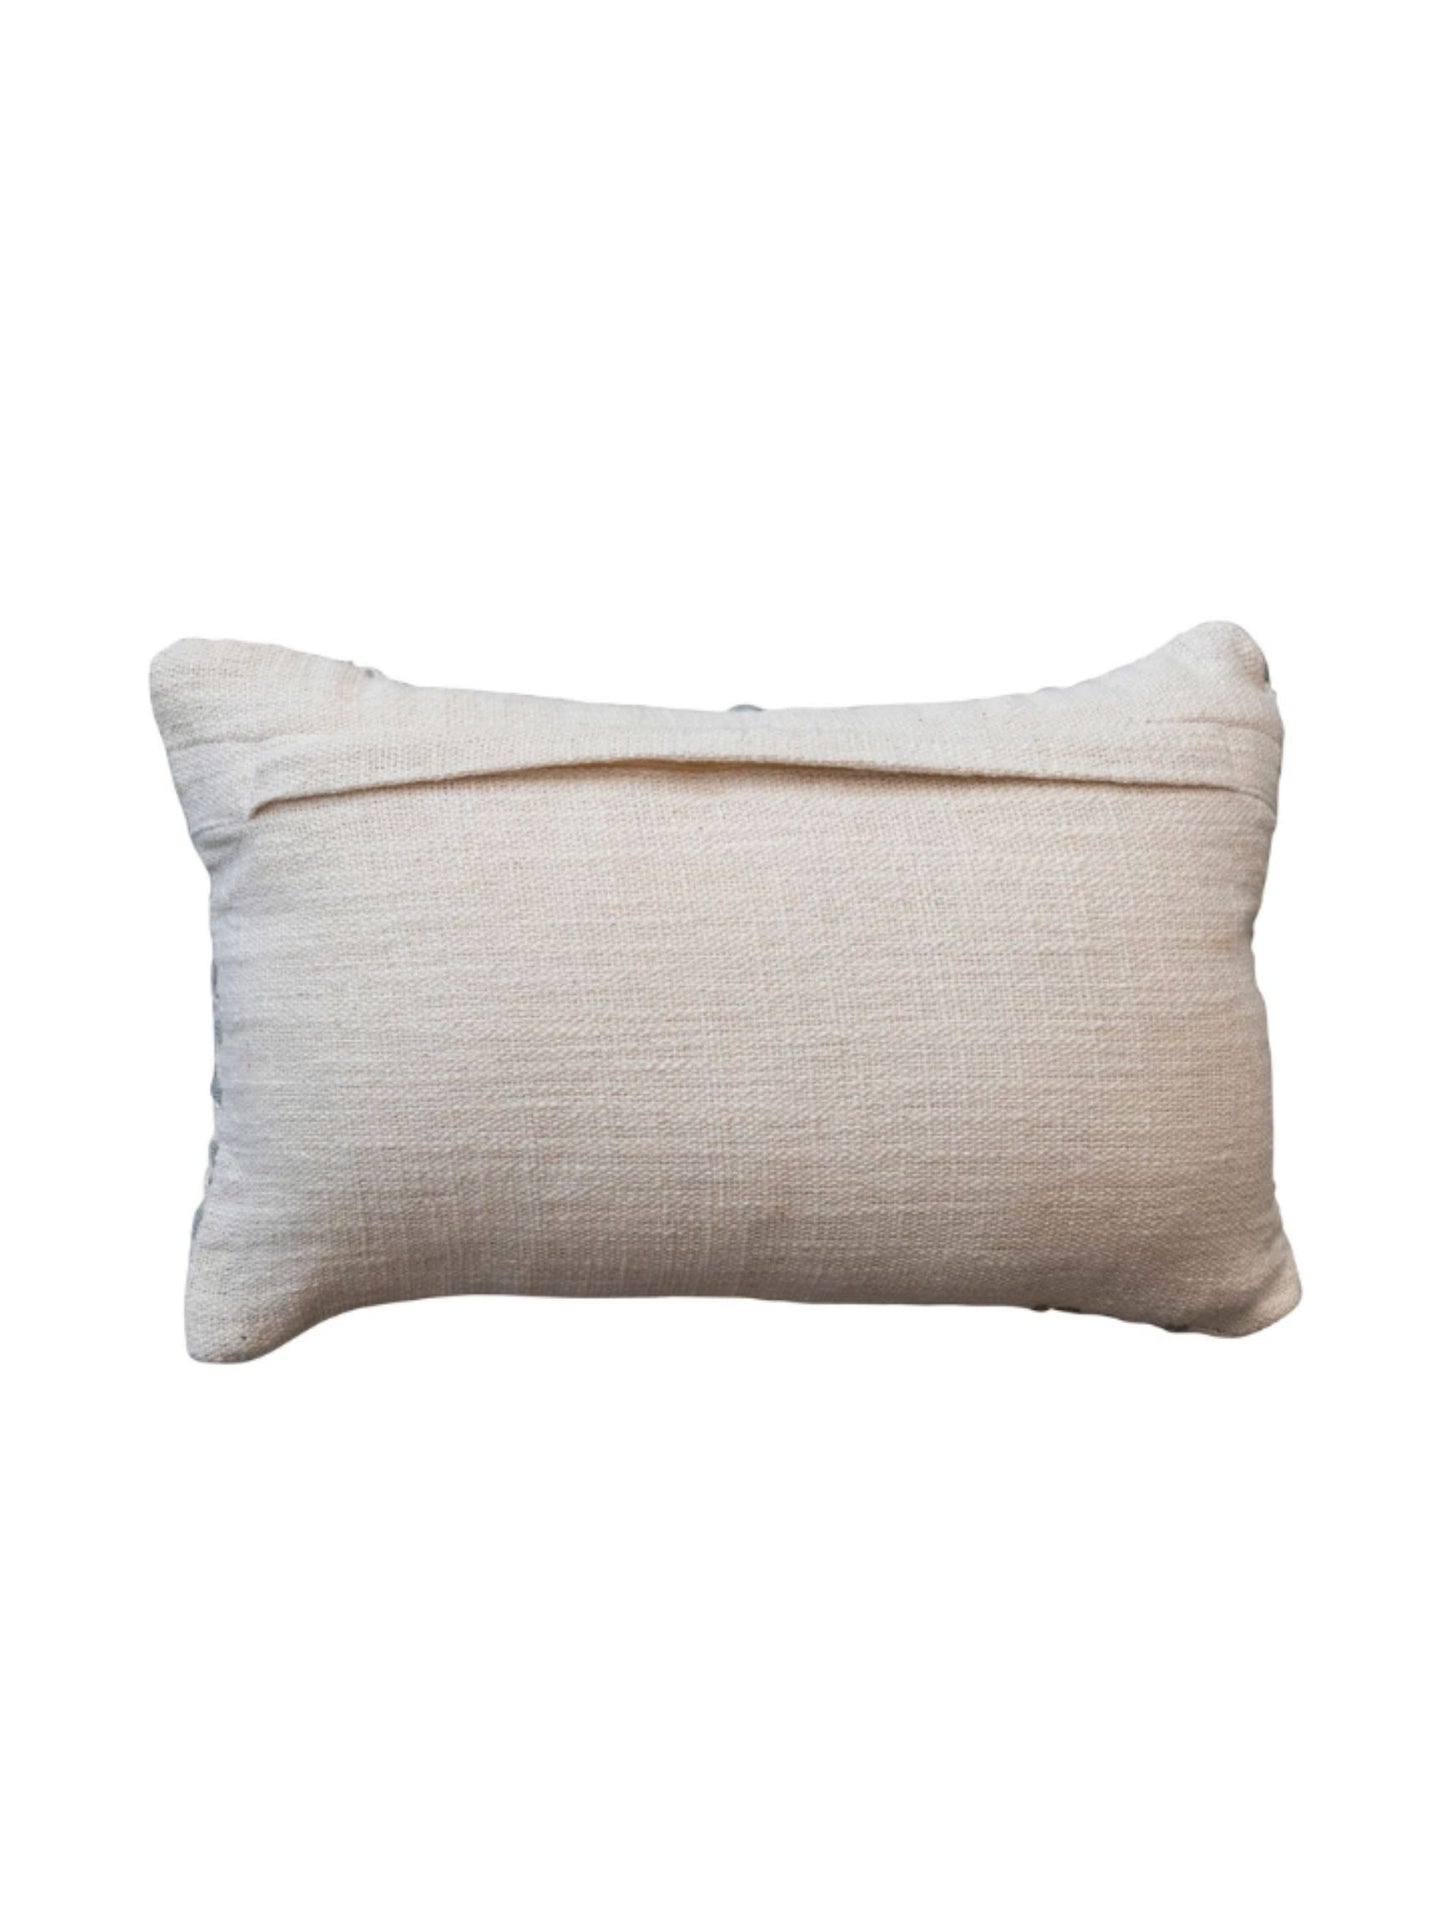 Hand-Embroidered Cotton Kantha Stitch Lumbar Pillow